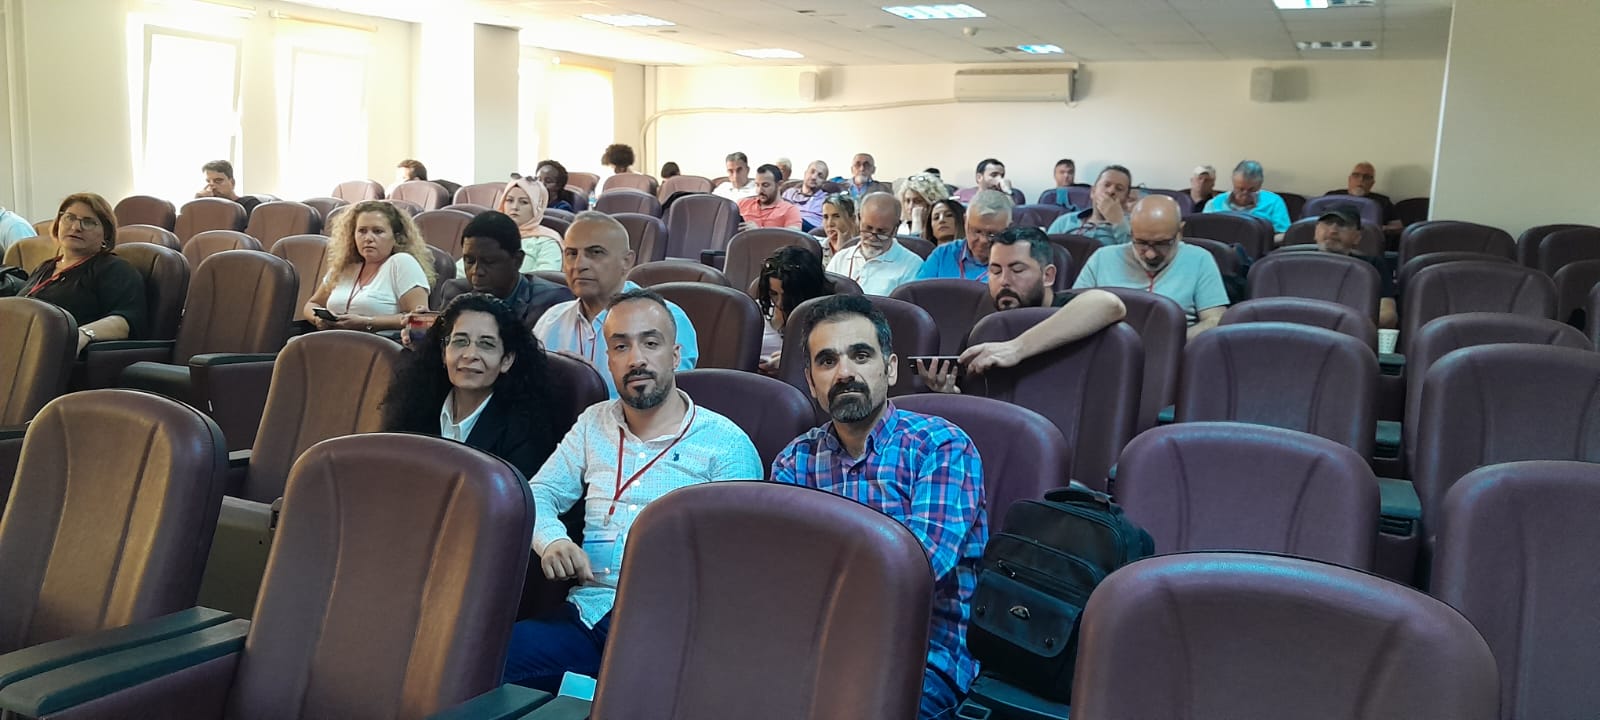 Yerel Medya Gazetecileri, Sakarya’da “Hoşgörü Gazeteciliği ” Seminerinde buluştu